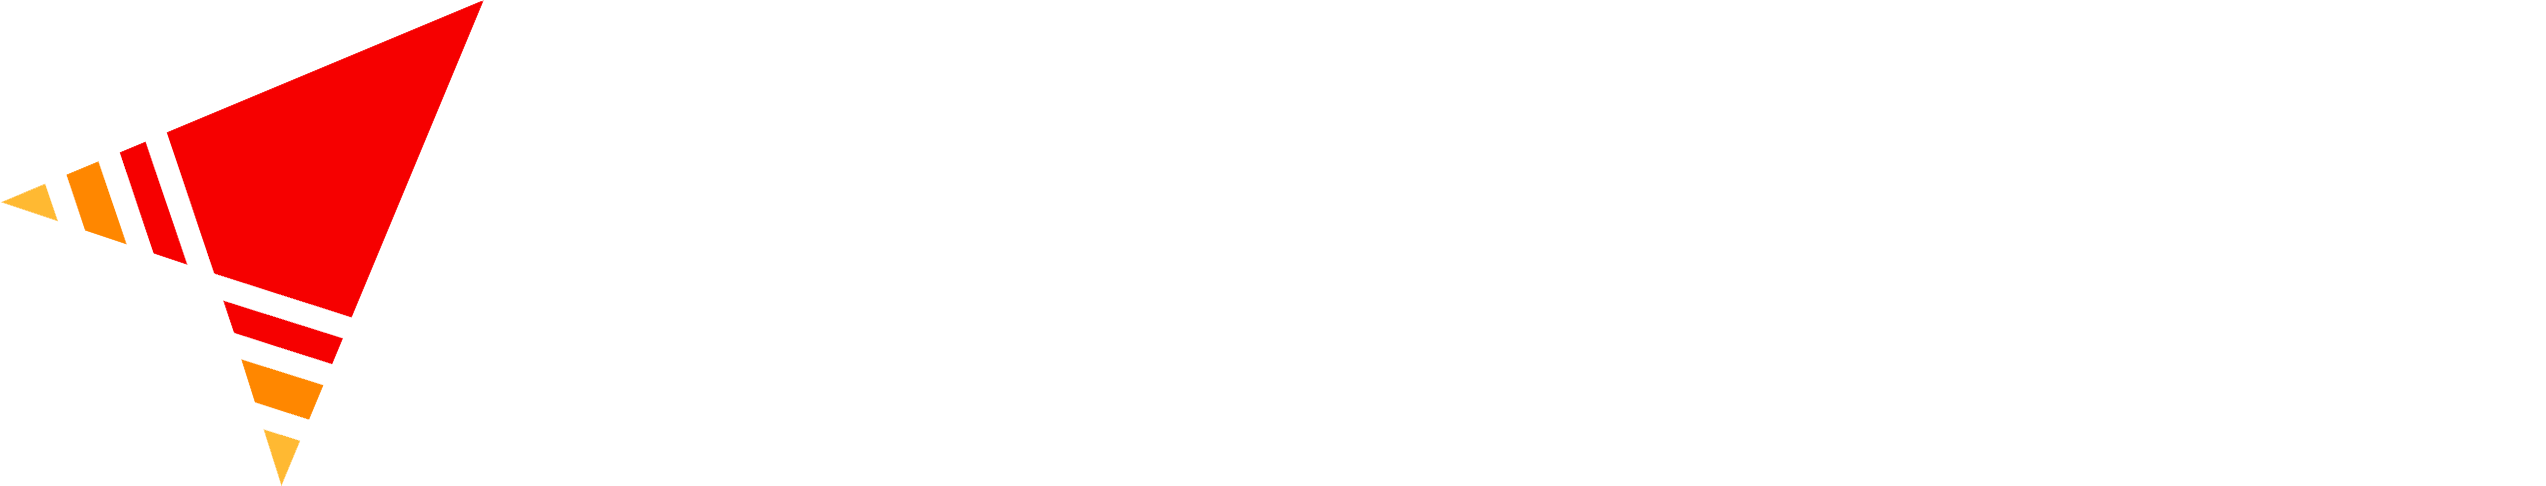 Avid Approach logo